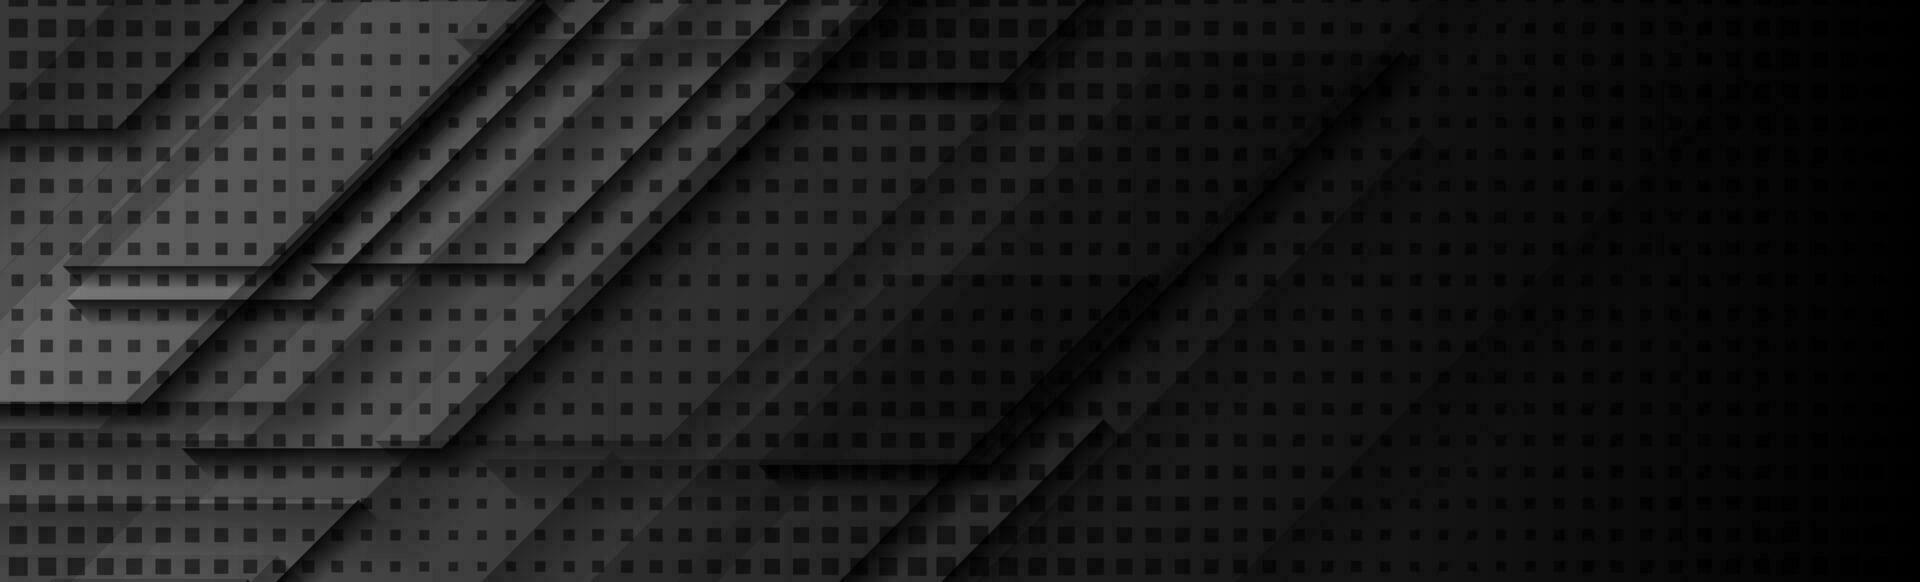 schwarz abstrakt Technik geometrisch modern Hintergrund vektor